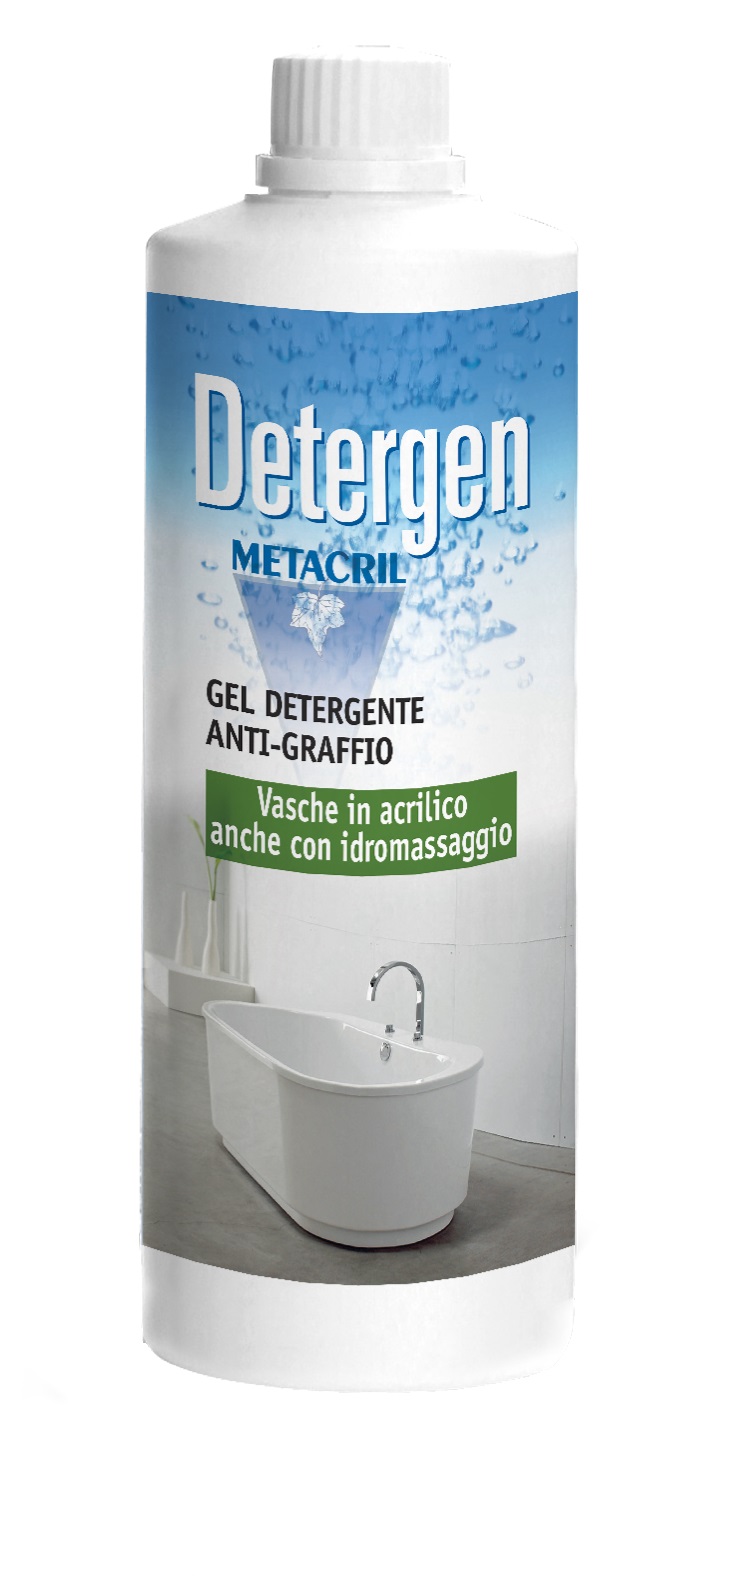 DETERGEN - 500ml DETERGEN - Detergente antigraffio per vasche e superfici acriliche